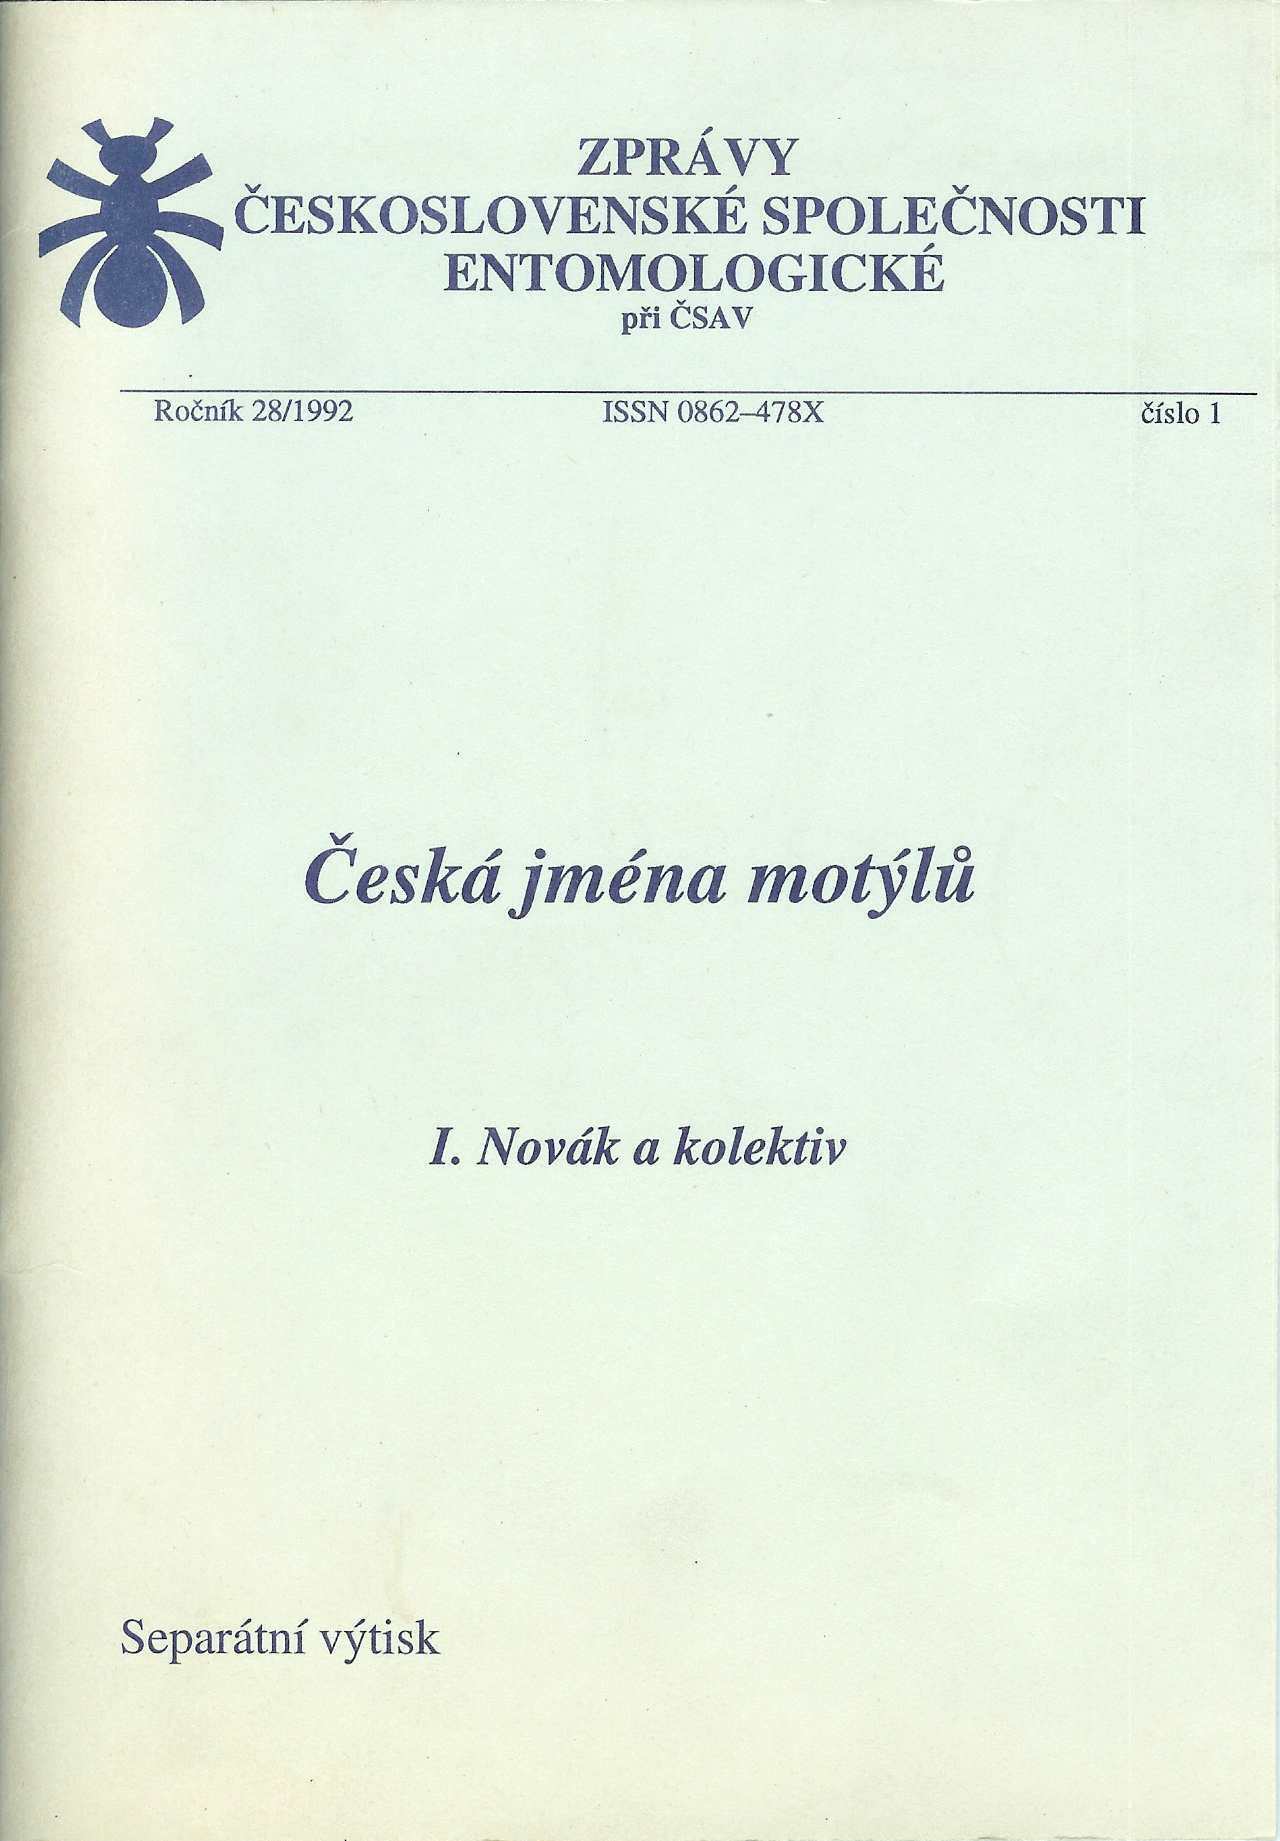 Ivo Novák - Česká jména motýlů